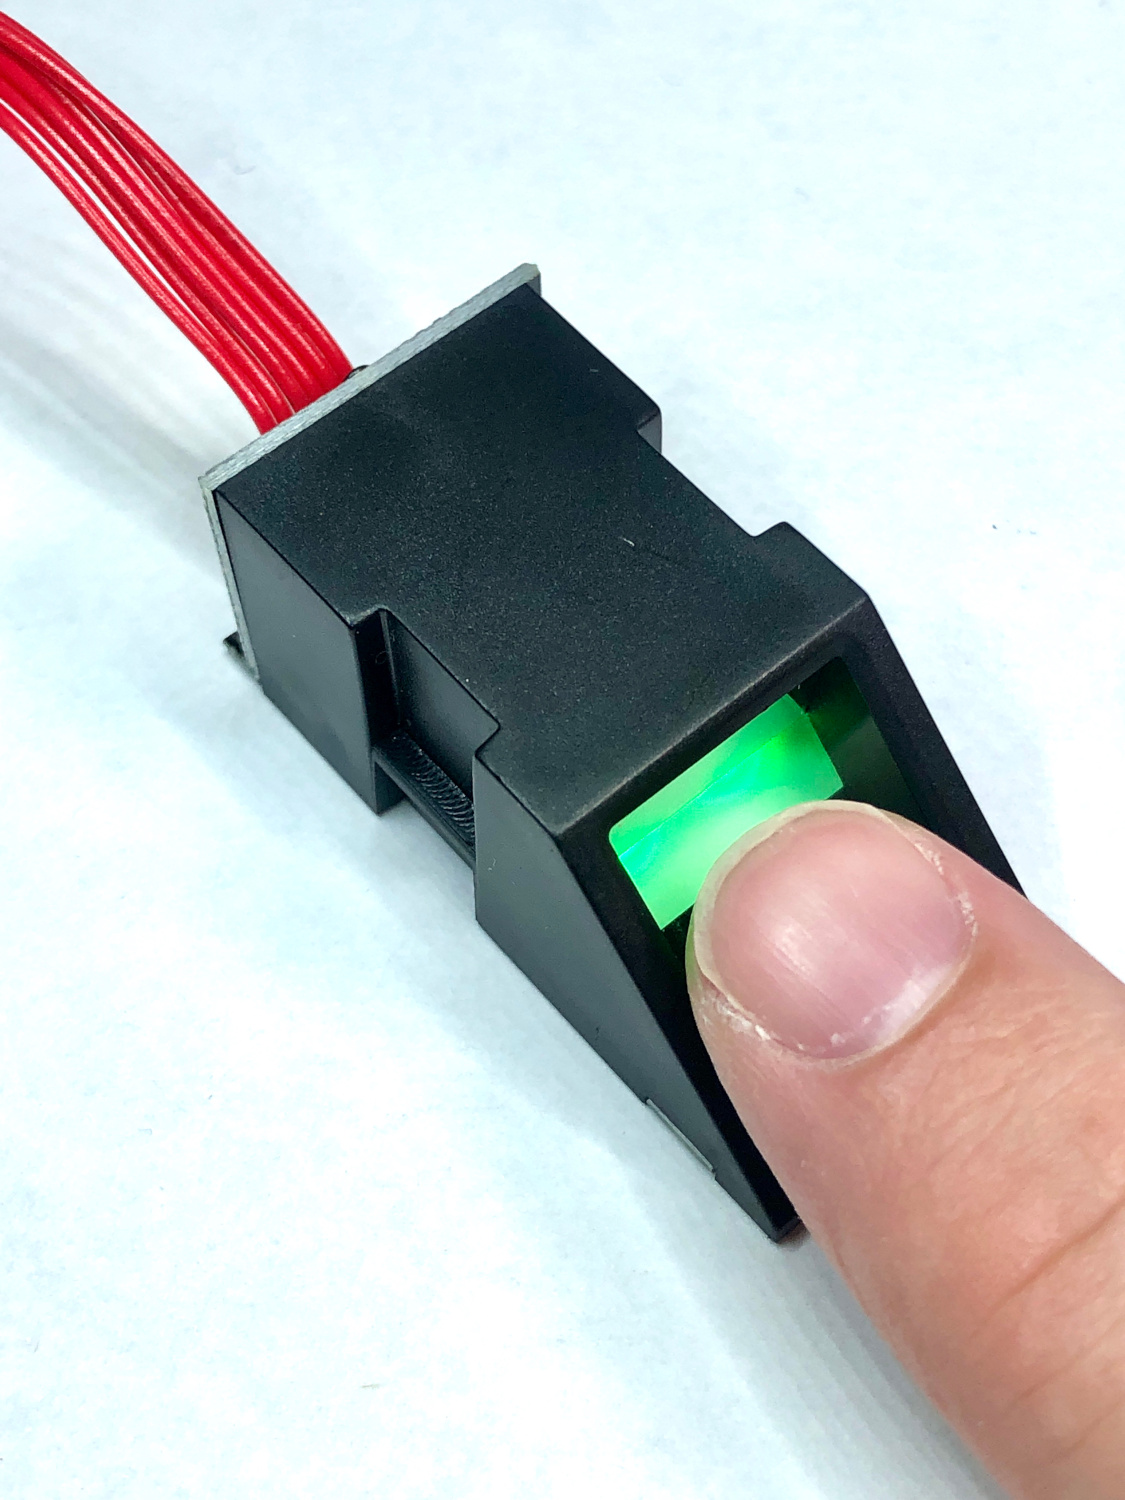 AS608 Optical Fingerprint Reader Sensor Scanner Module Door Lock Access Control Blue Light for Arduino Wishiot